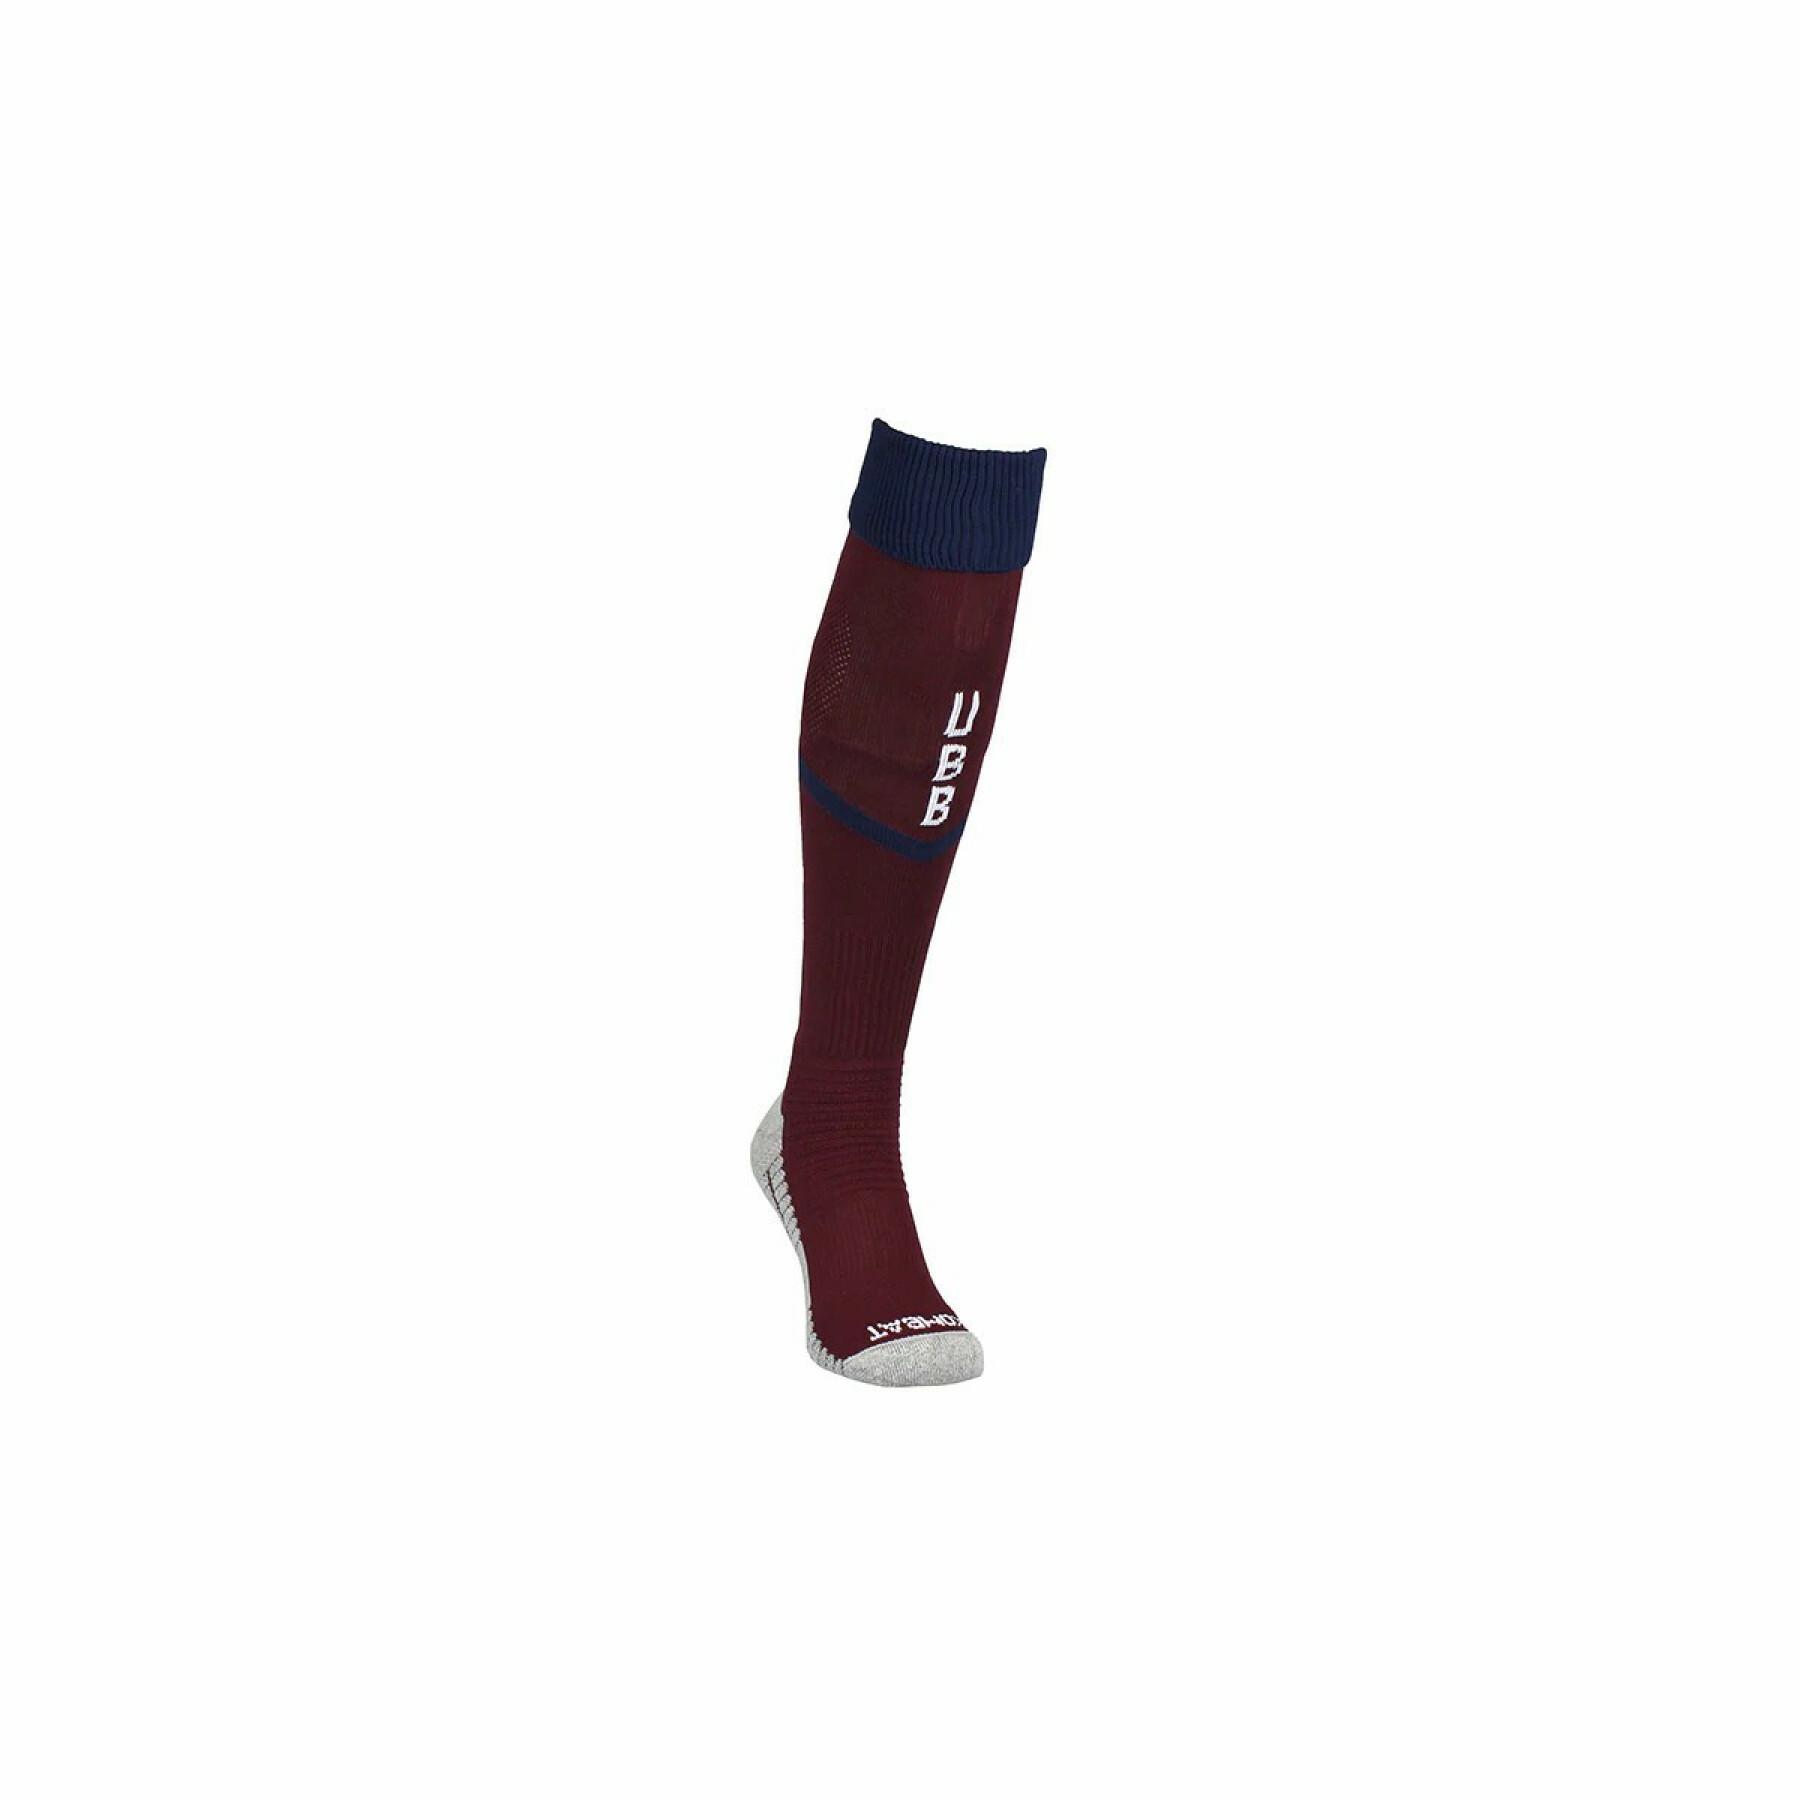 Socks Union Bordeaux-Bègles Kombat Spark Pro 1P